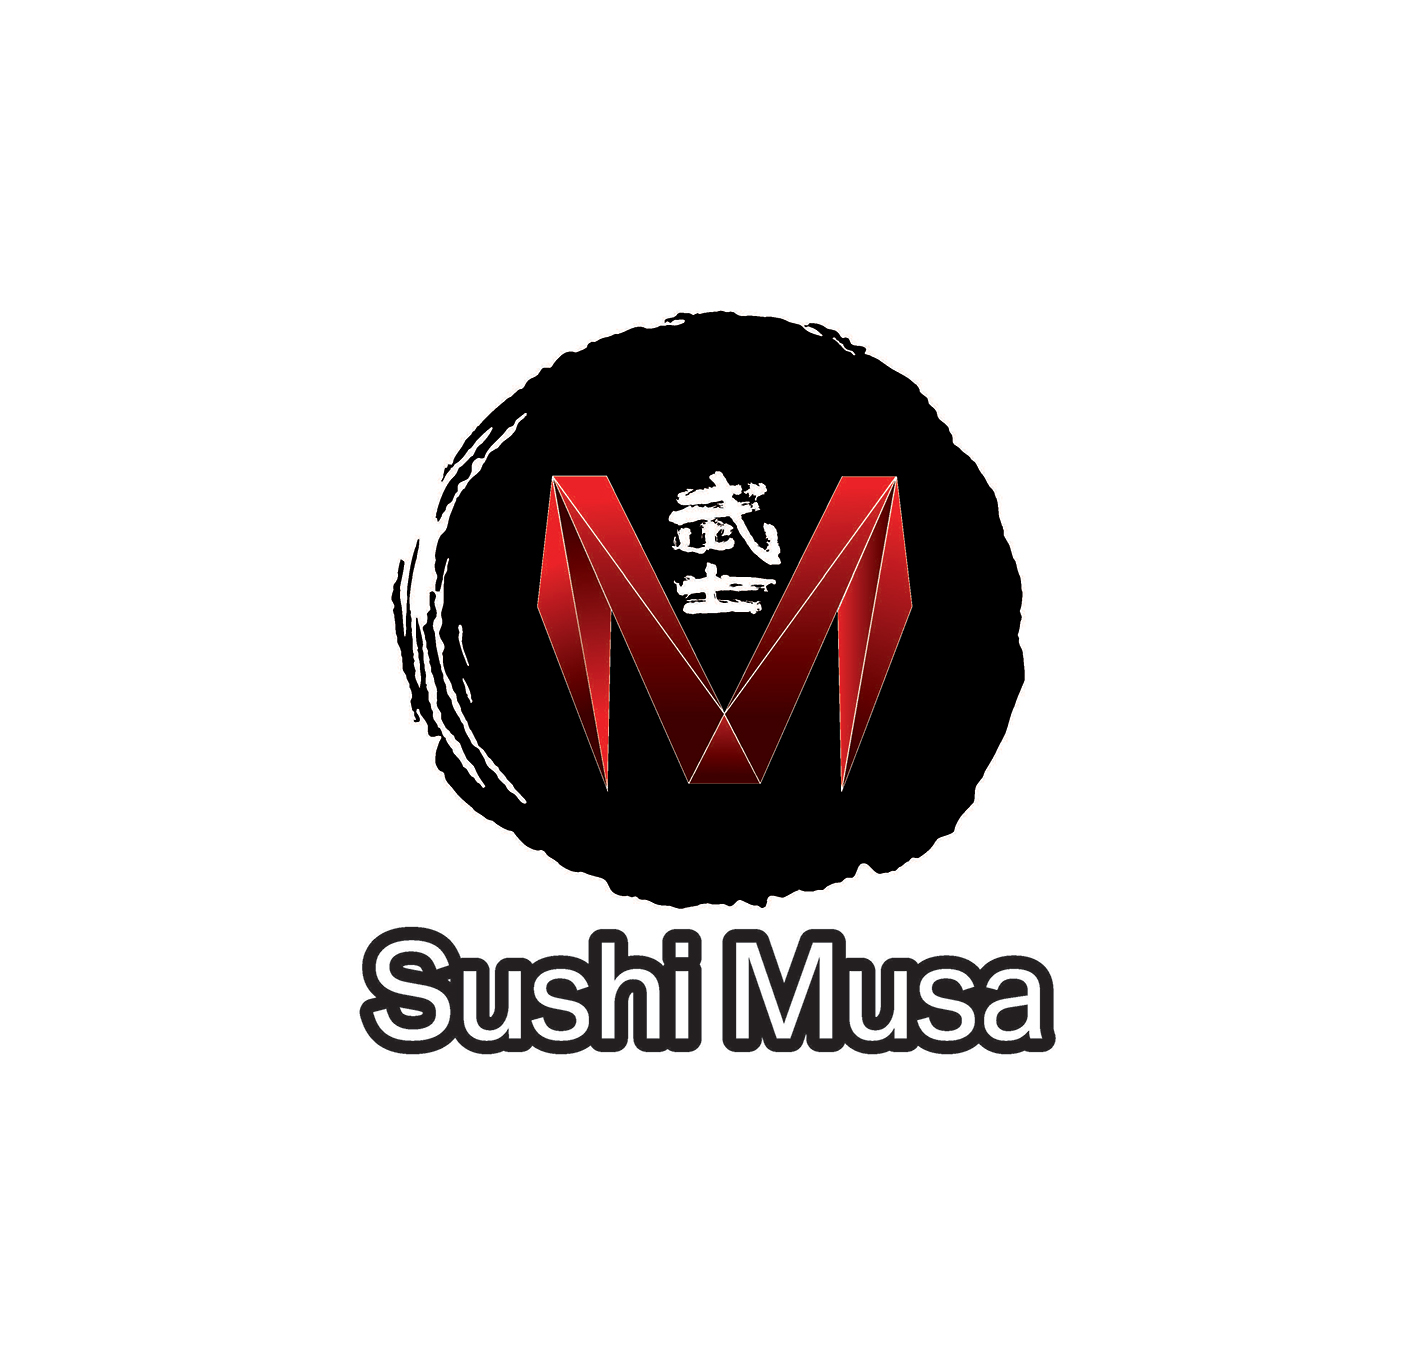 Sushi musalogo.jpg